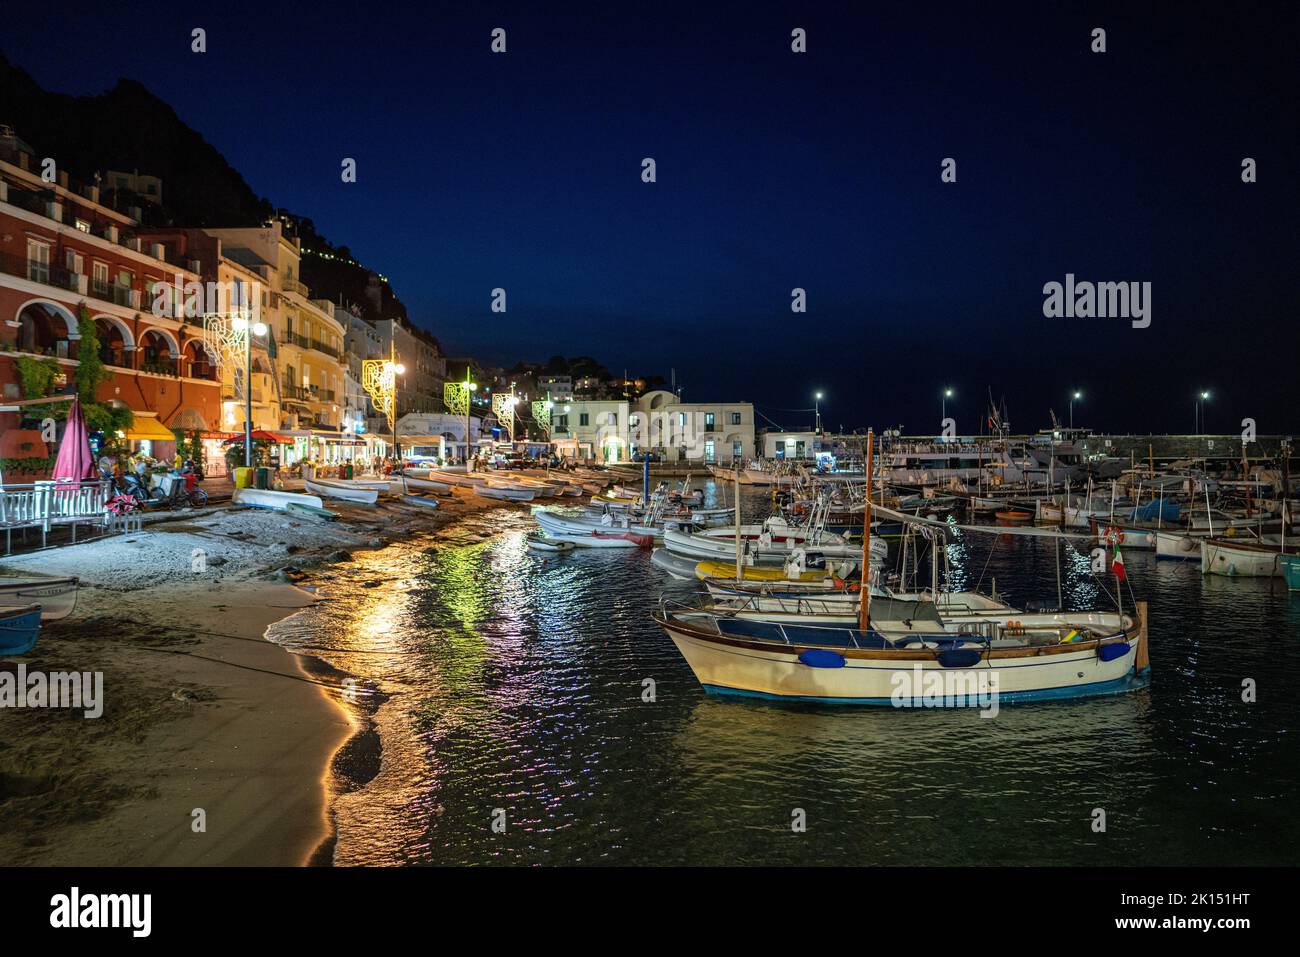 Capri island, the dock of Marina grande by night Stock Photo